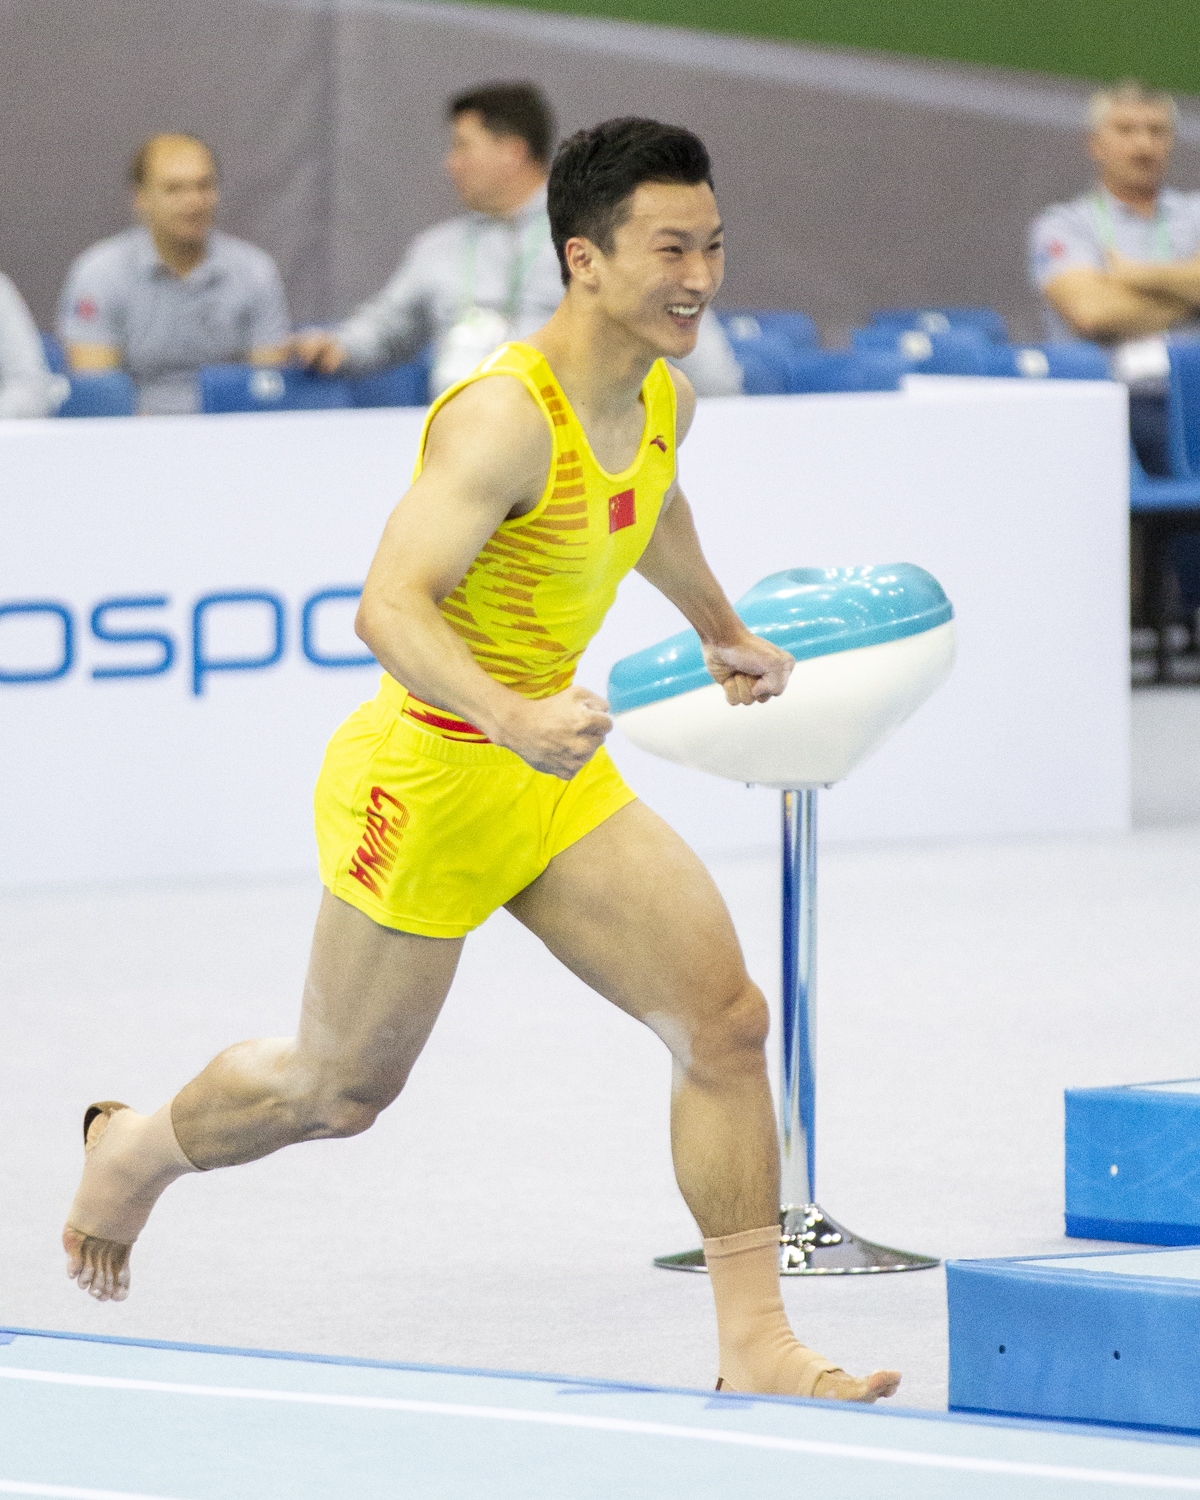 Photographie couleur de Kuo Zhang, de la République Populaire de Chine, qui repart heureux d'avoir réussi son passage de Tumbling en finale individuelle